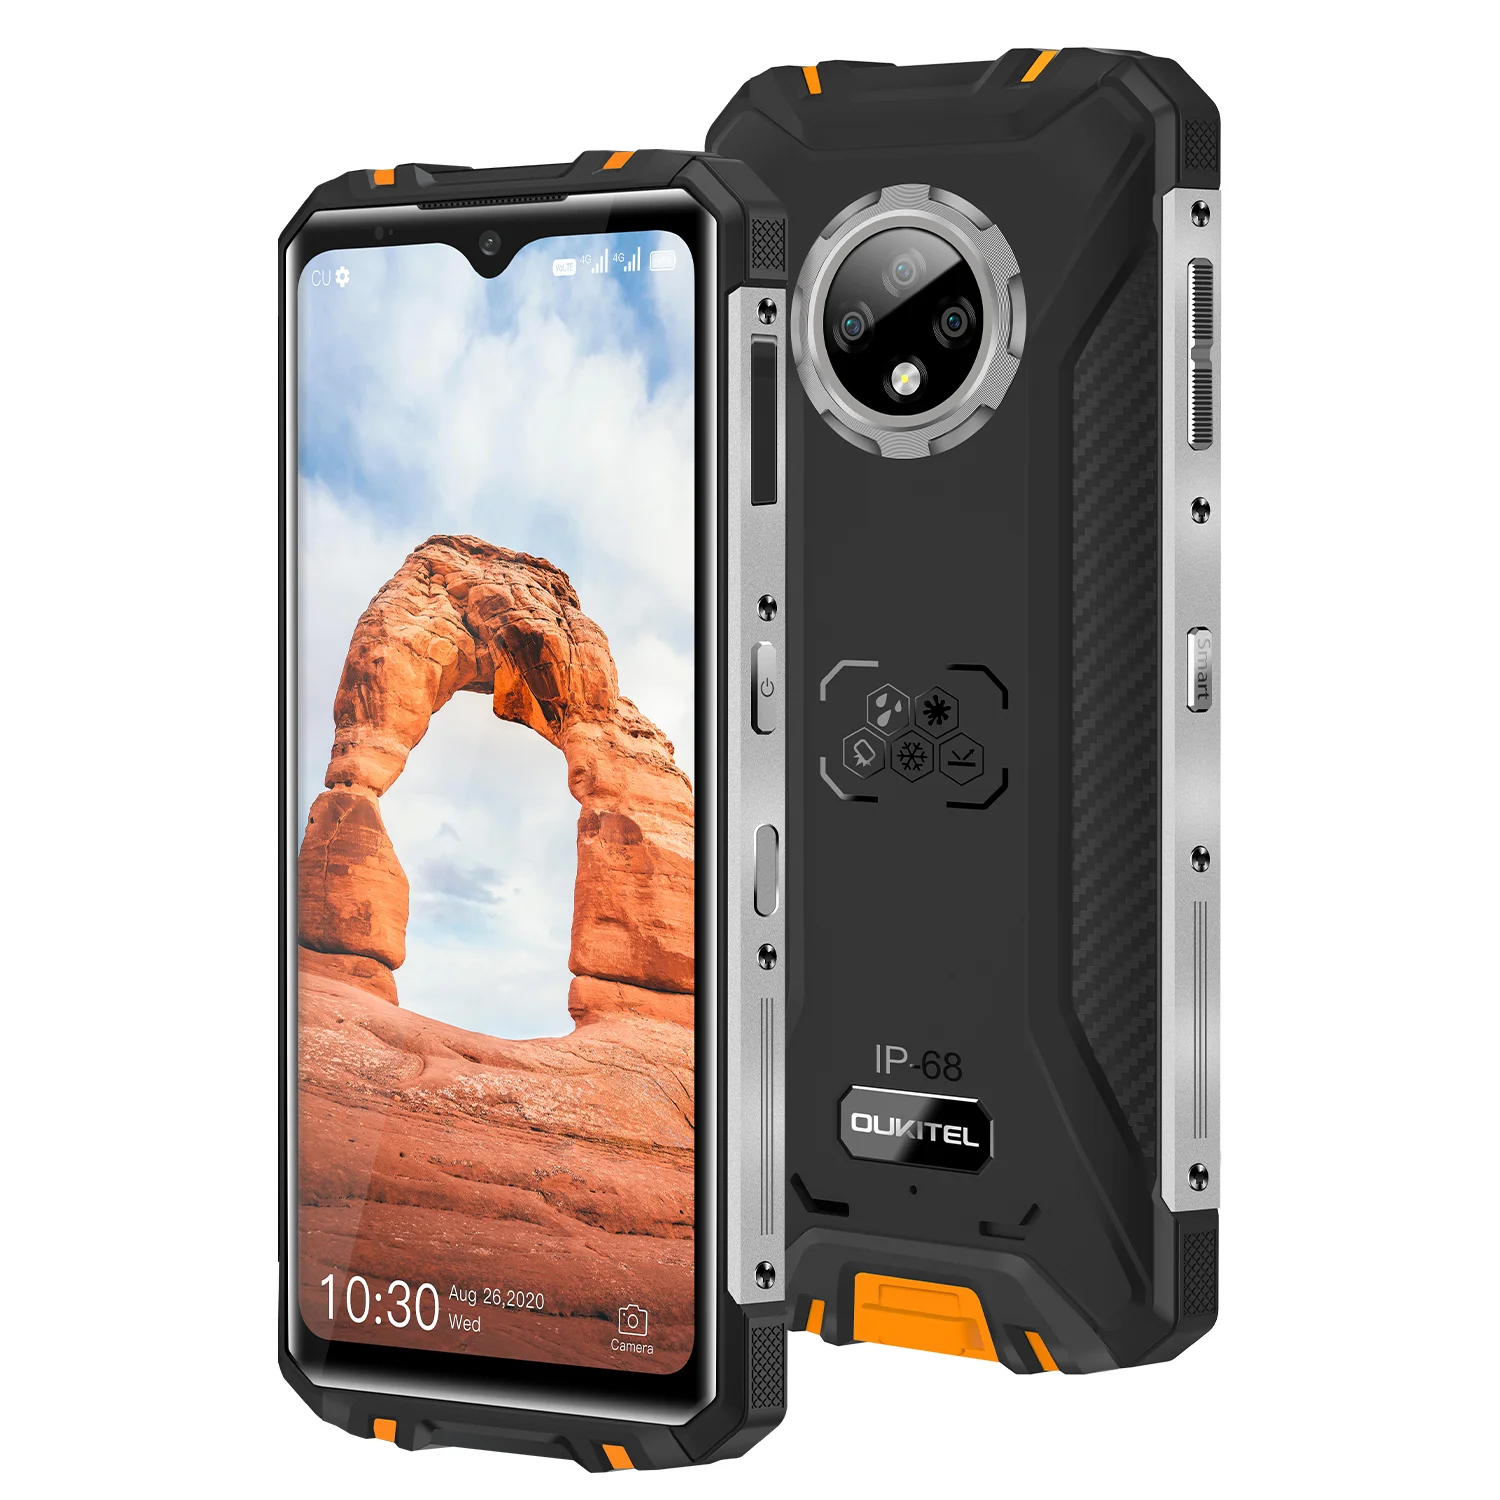 

Global Original WP8 PRO Explosion-proof 4GB+64GB 6.49 inch Waterproof Mobile Phone, Black / orange